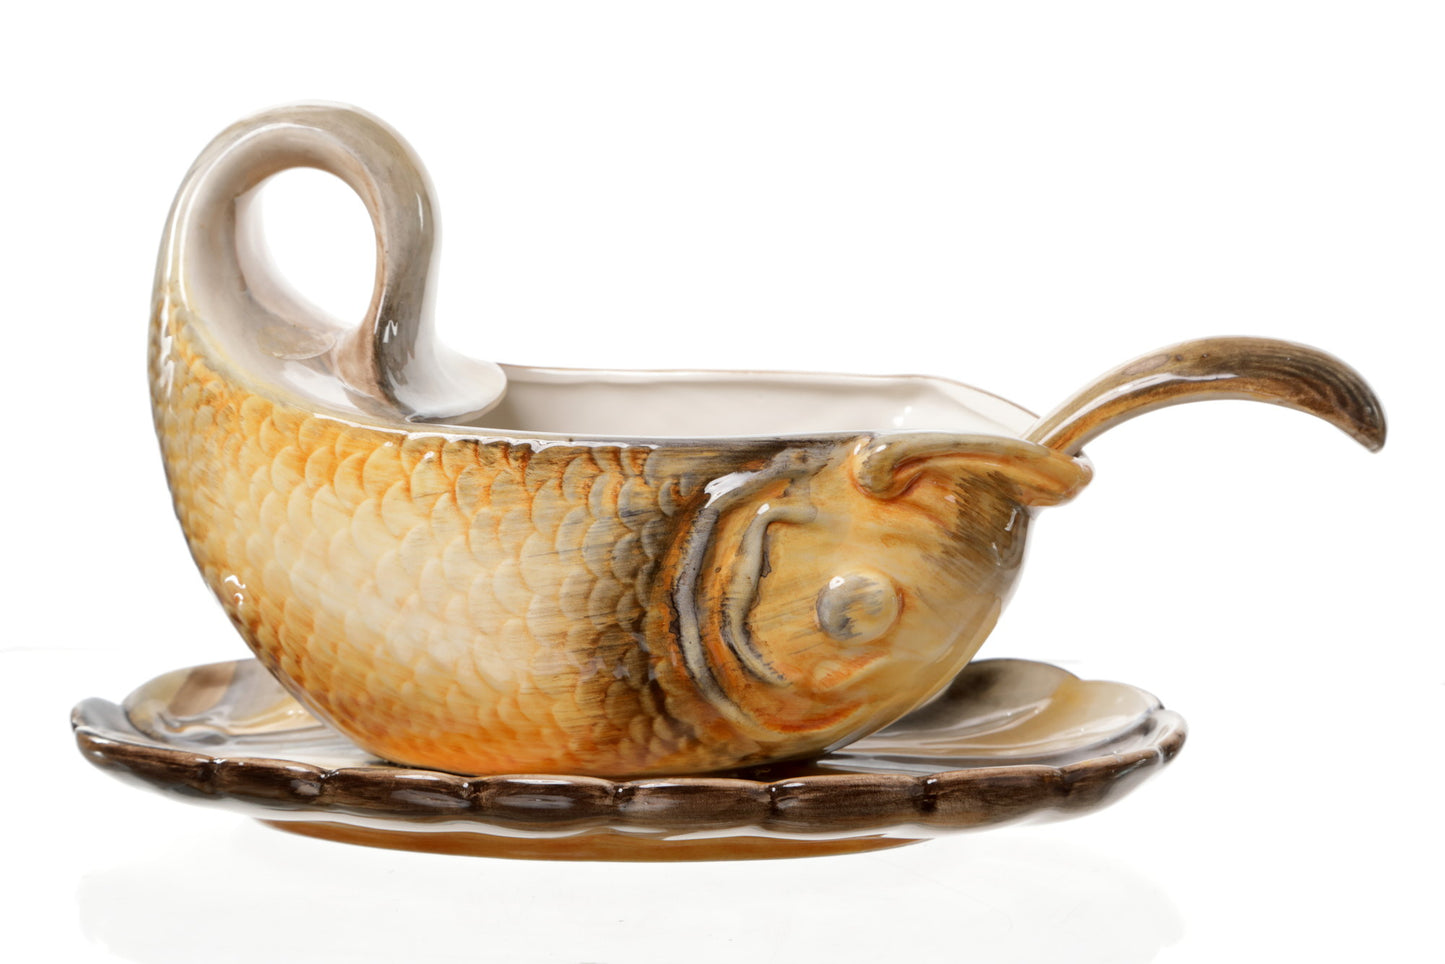 Ceramic fish service